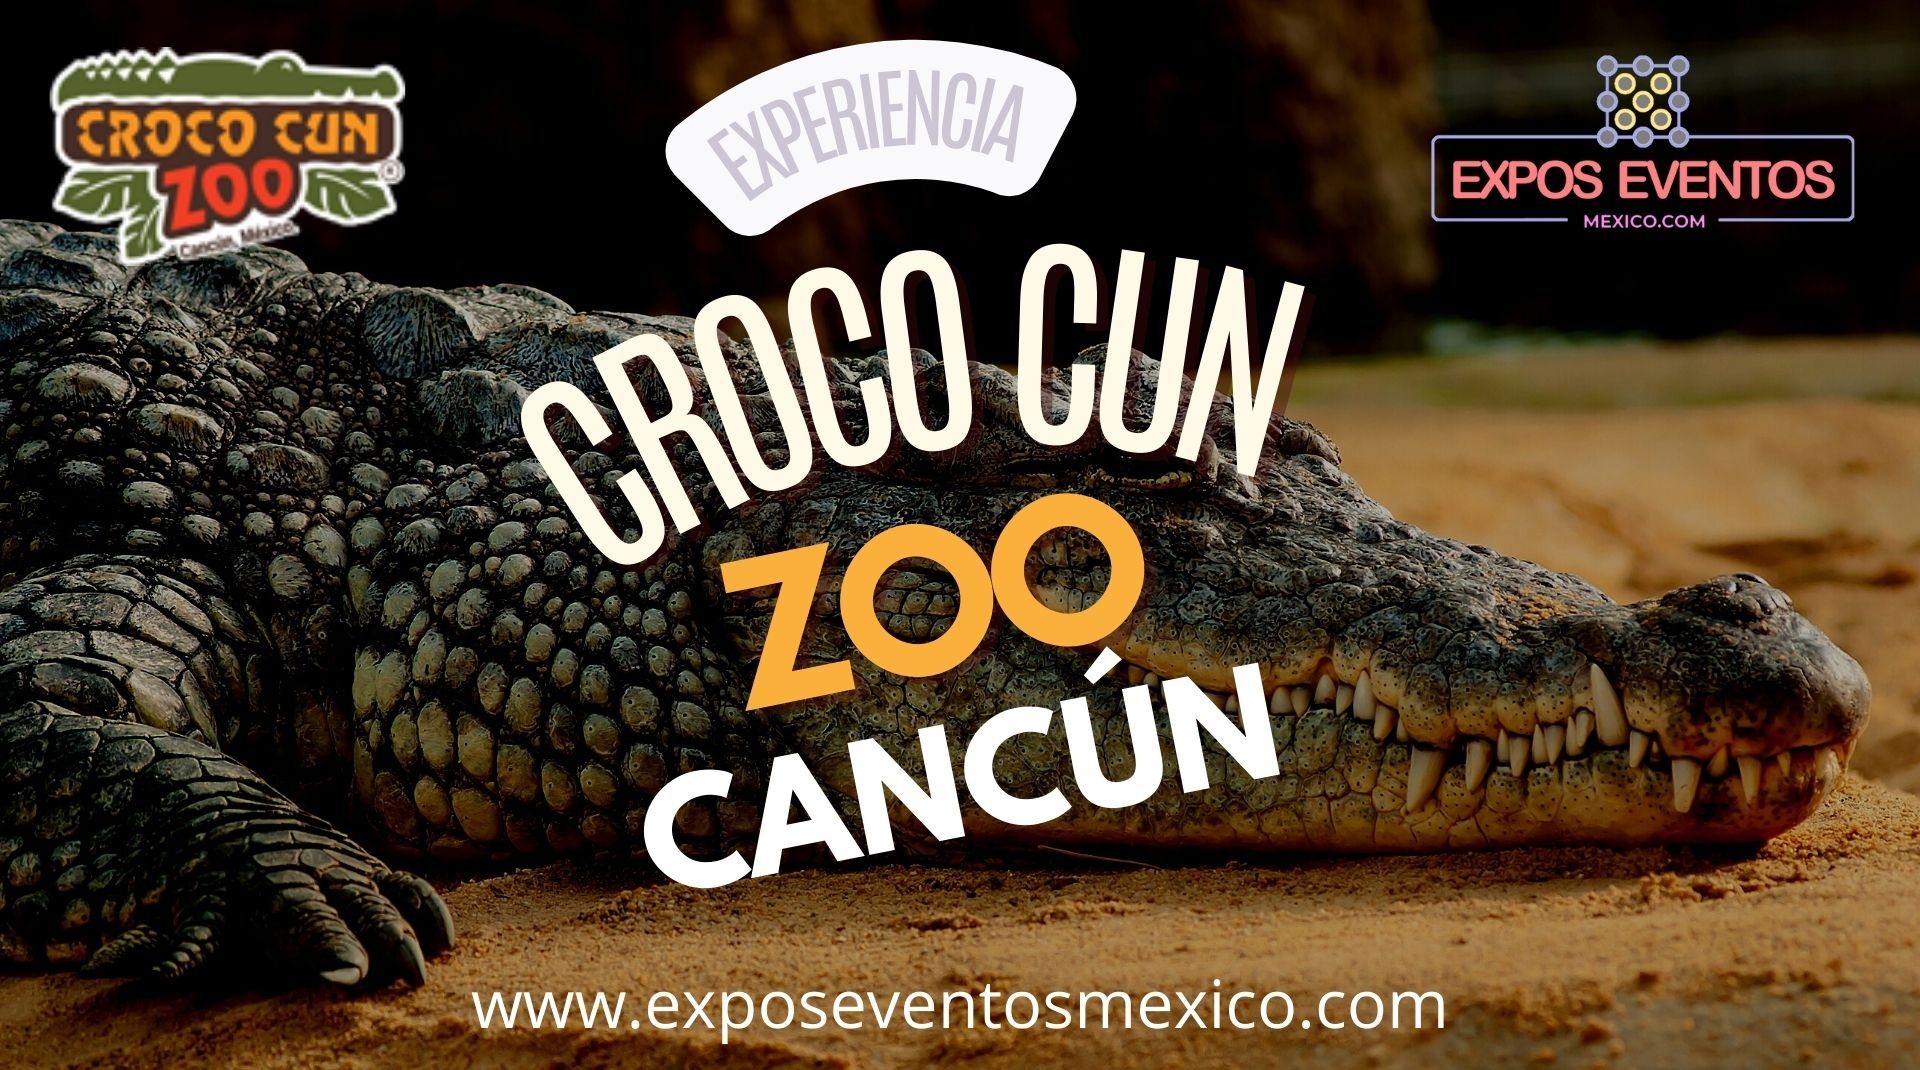 Croco Cun Zoo Cancún Crococun Zoo Cancún Quintaroo Mexico